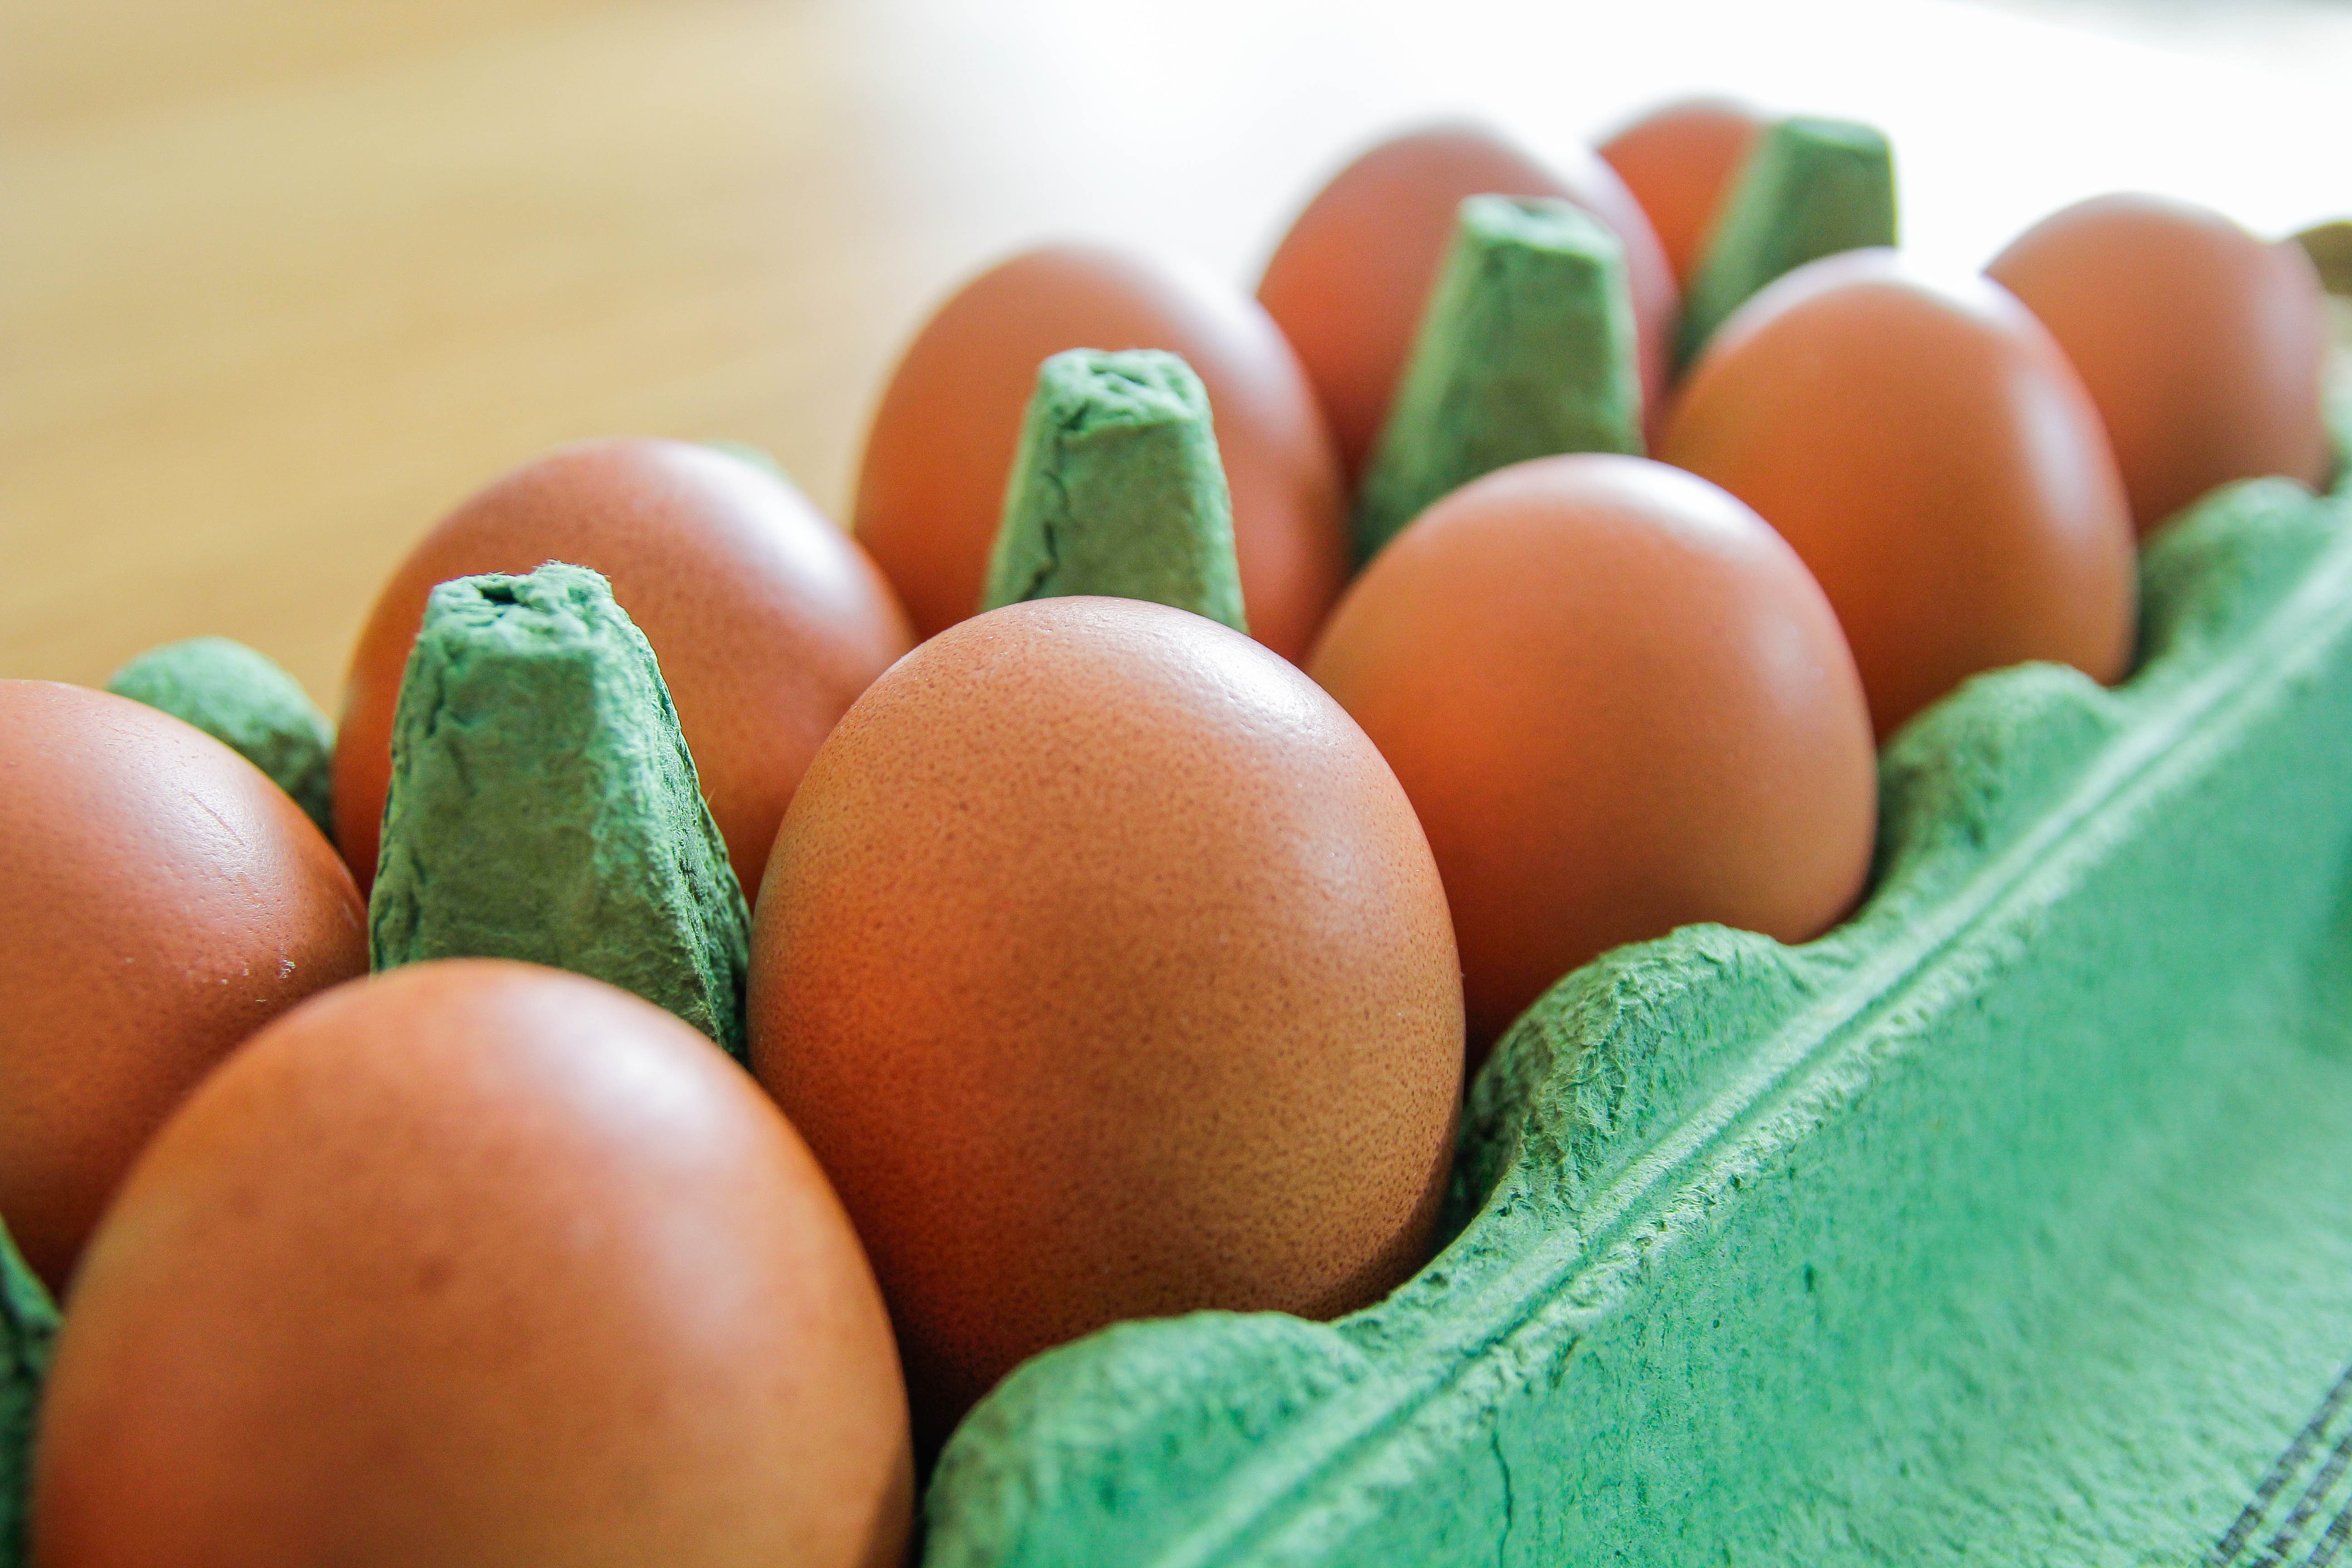 Wenn Sie möchten, dass Ihre Eier länger haltbar sind, können Sie sie einfrieren, allerdings nicht in der Schale